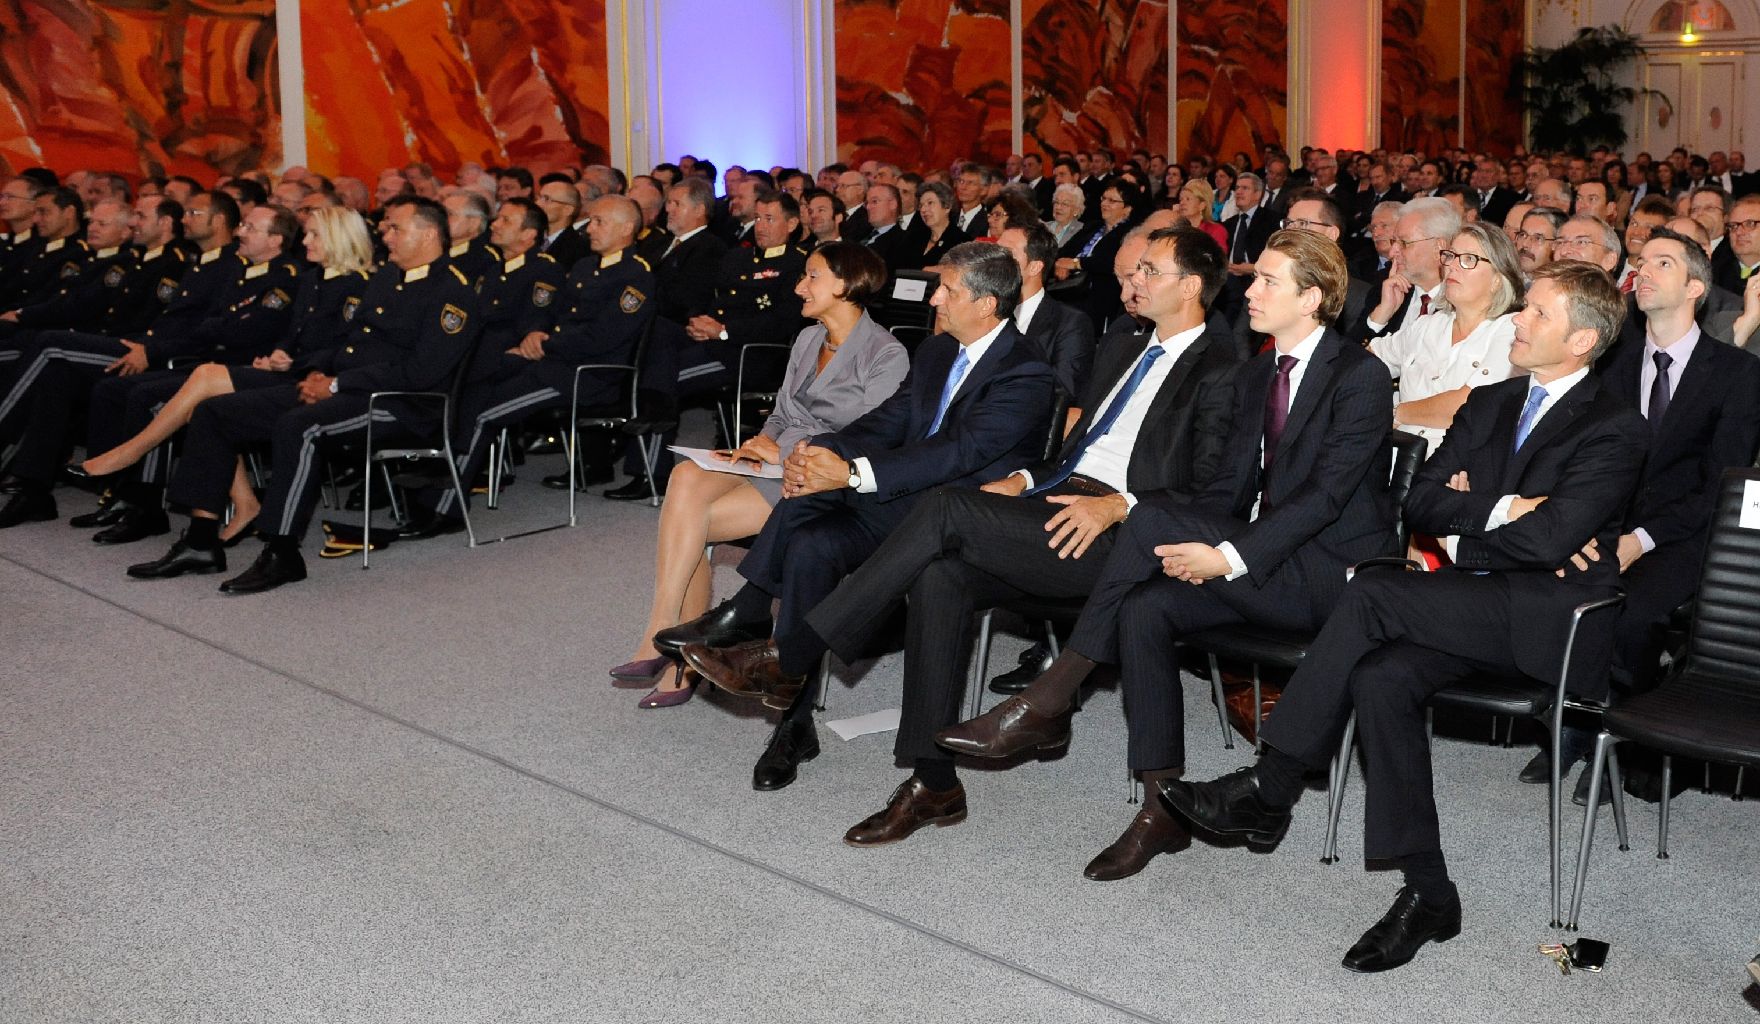 Am 31. August 2012 hielt Staatssekretär Josef Ostermayer anlässlich der Vorstellung der Spitzenkräfte der neuen Landespolizeidirektionen (LPD) einer Rede in der Wiener Hofburg.